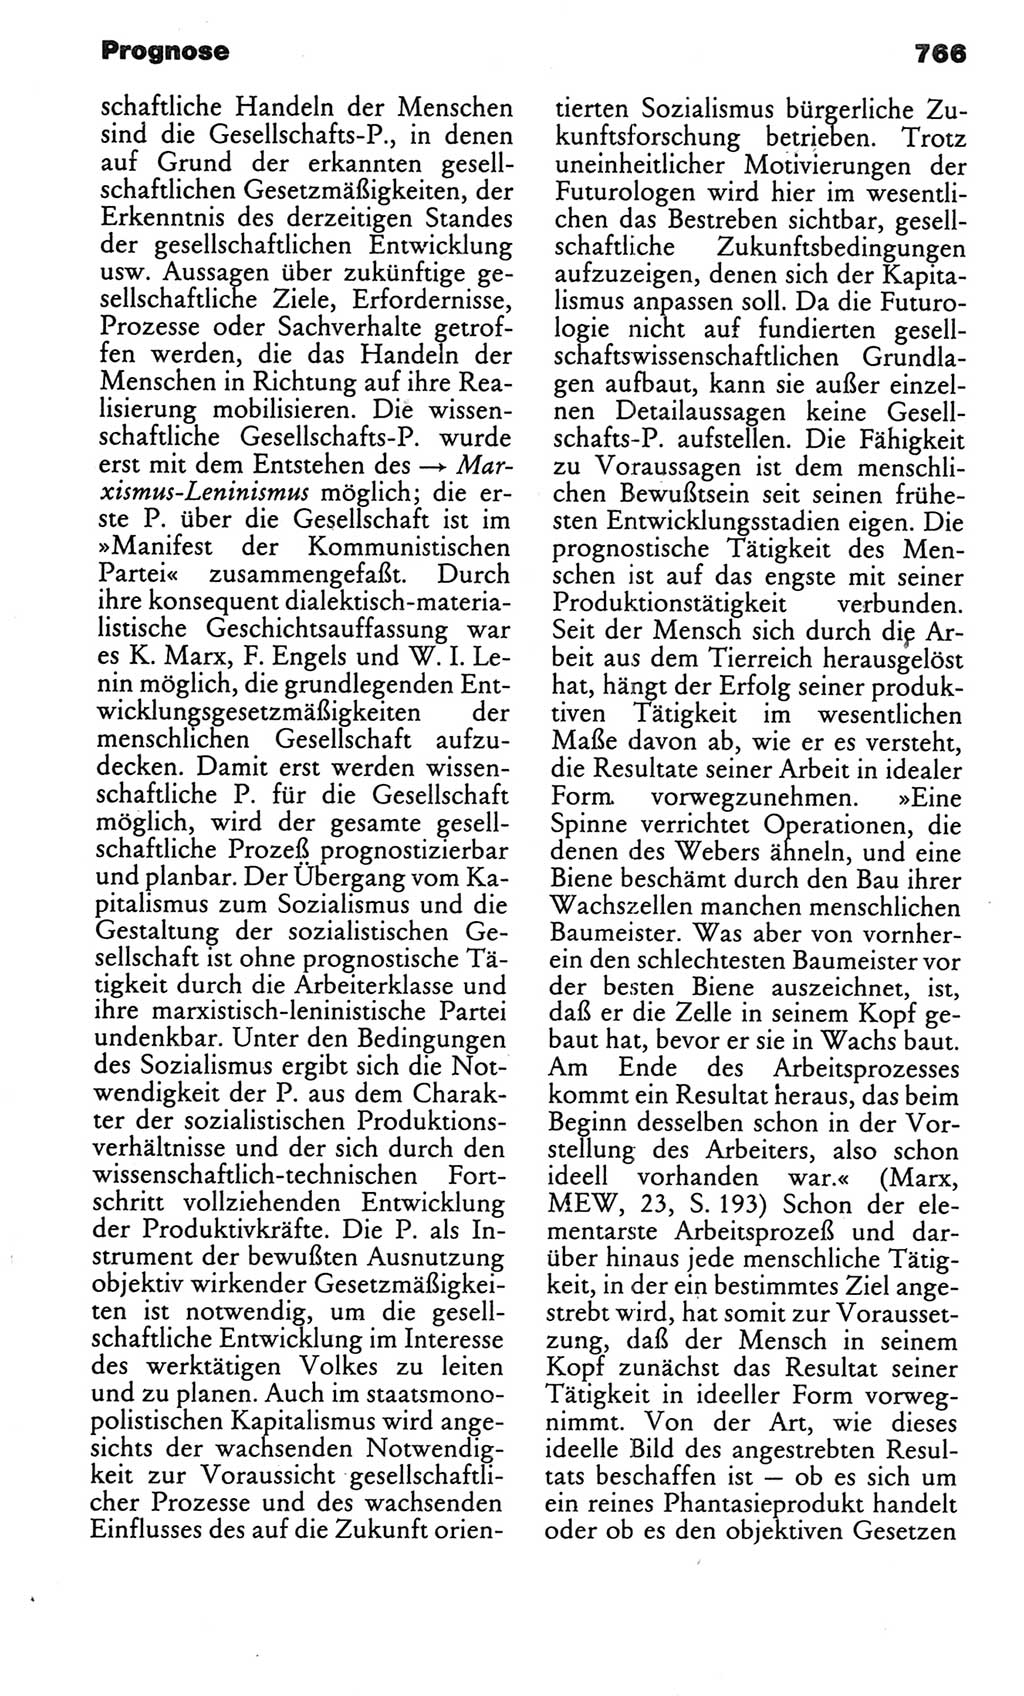 Kleines politisches Wörterbuch [Deutsche Demokratische Republik (DDR)] 1986, Seite 766 (Kl. pol. Wb. DDR 1986, S. 766)